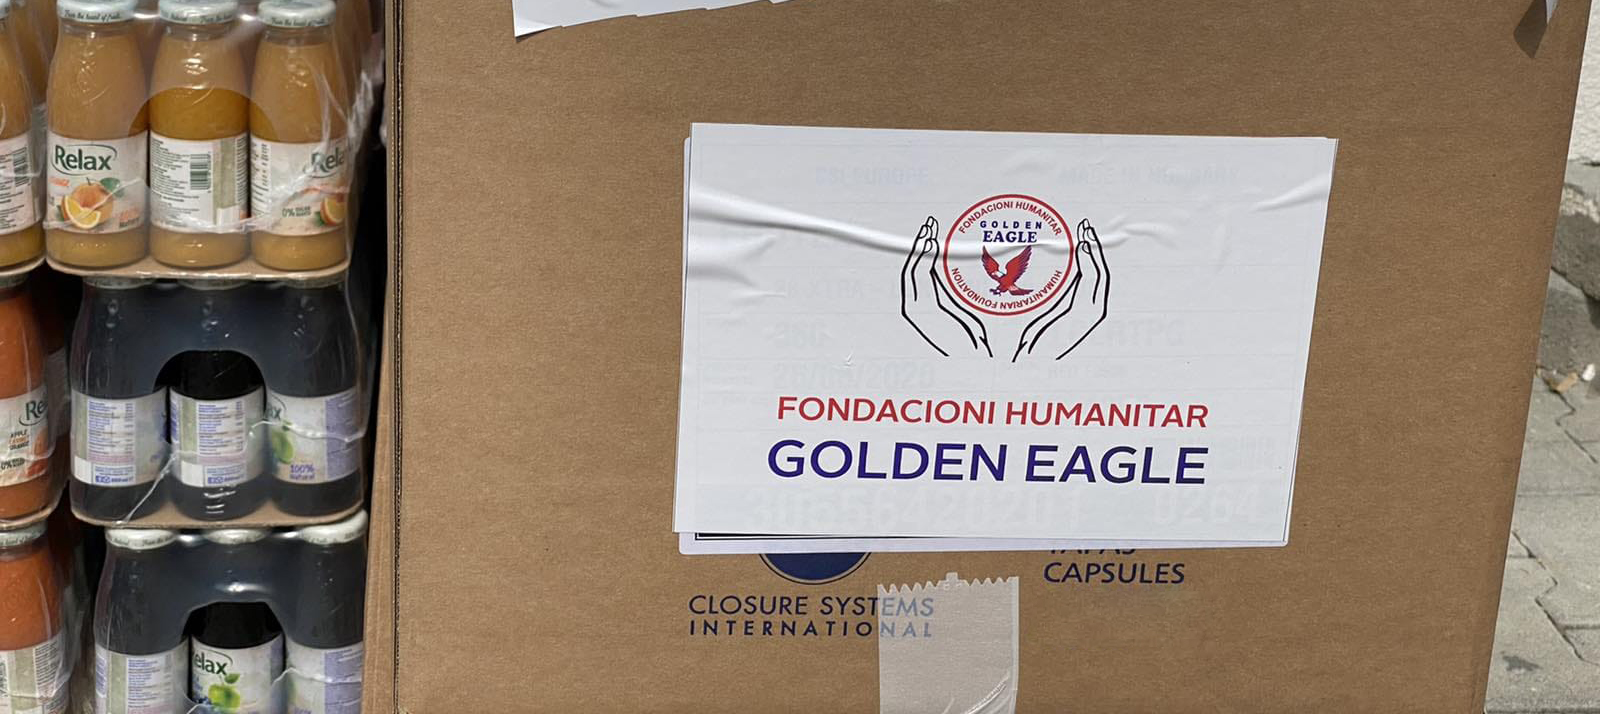 Donacion për spitalin e Ferizajit nga fondacioni Golden Eagle